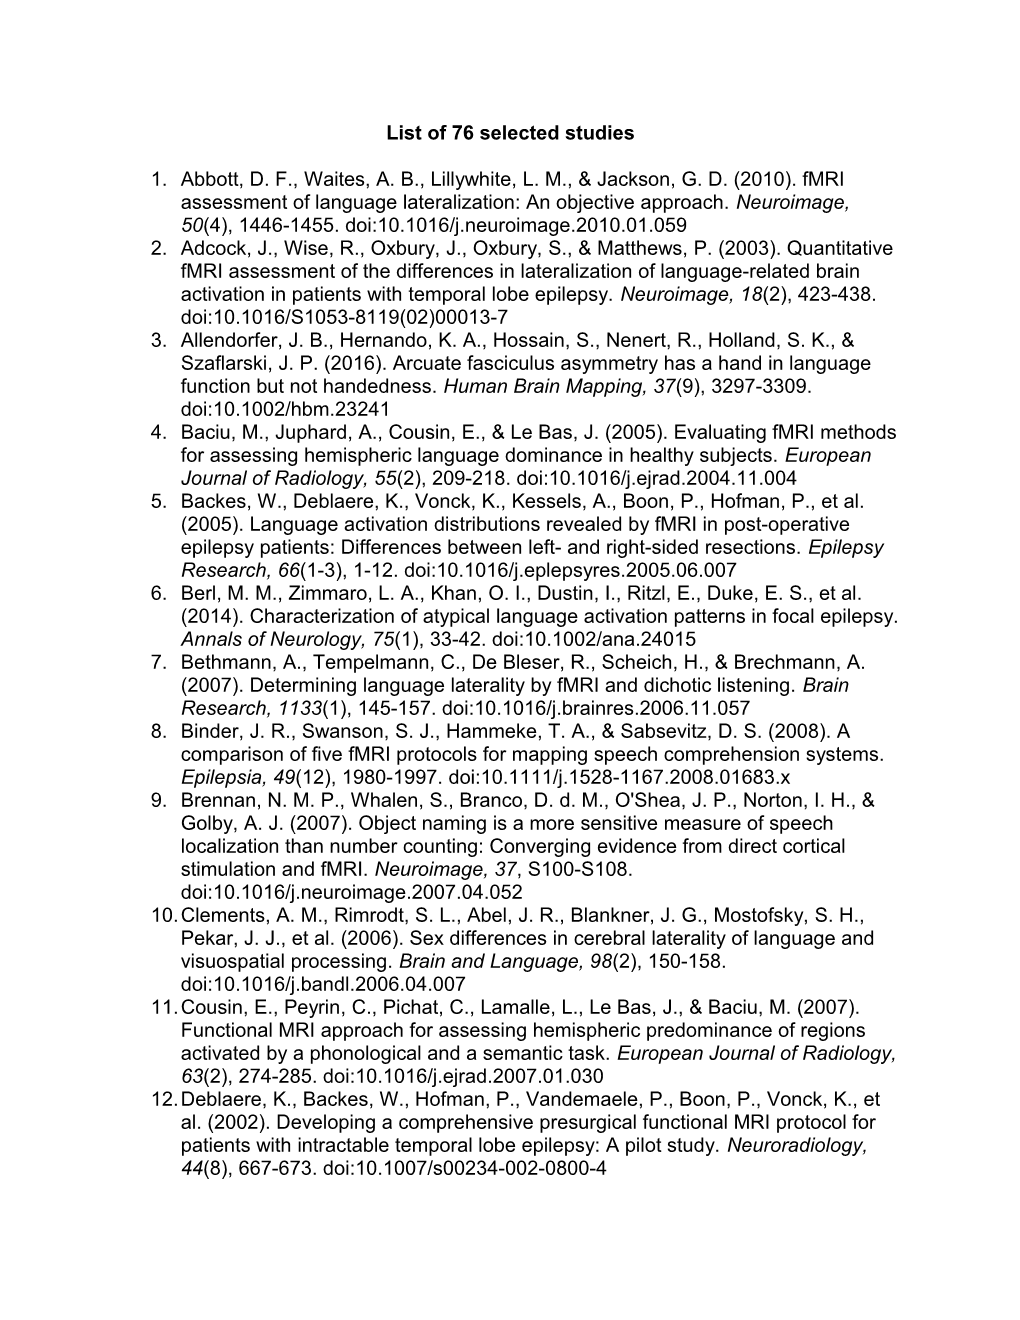 List of 76 Selected Studies